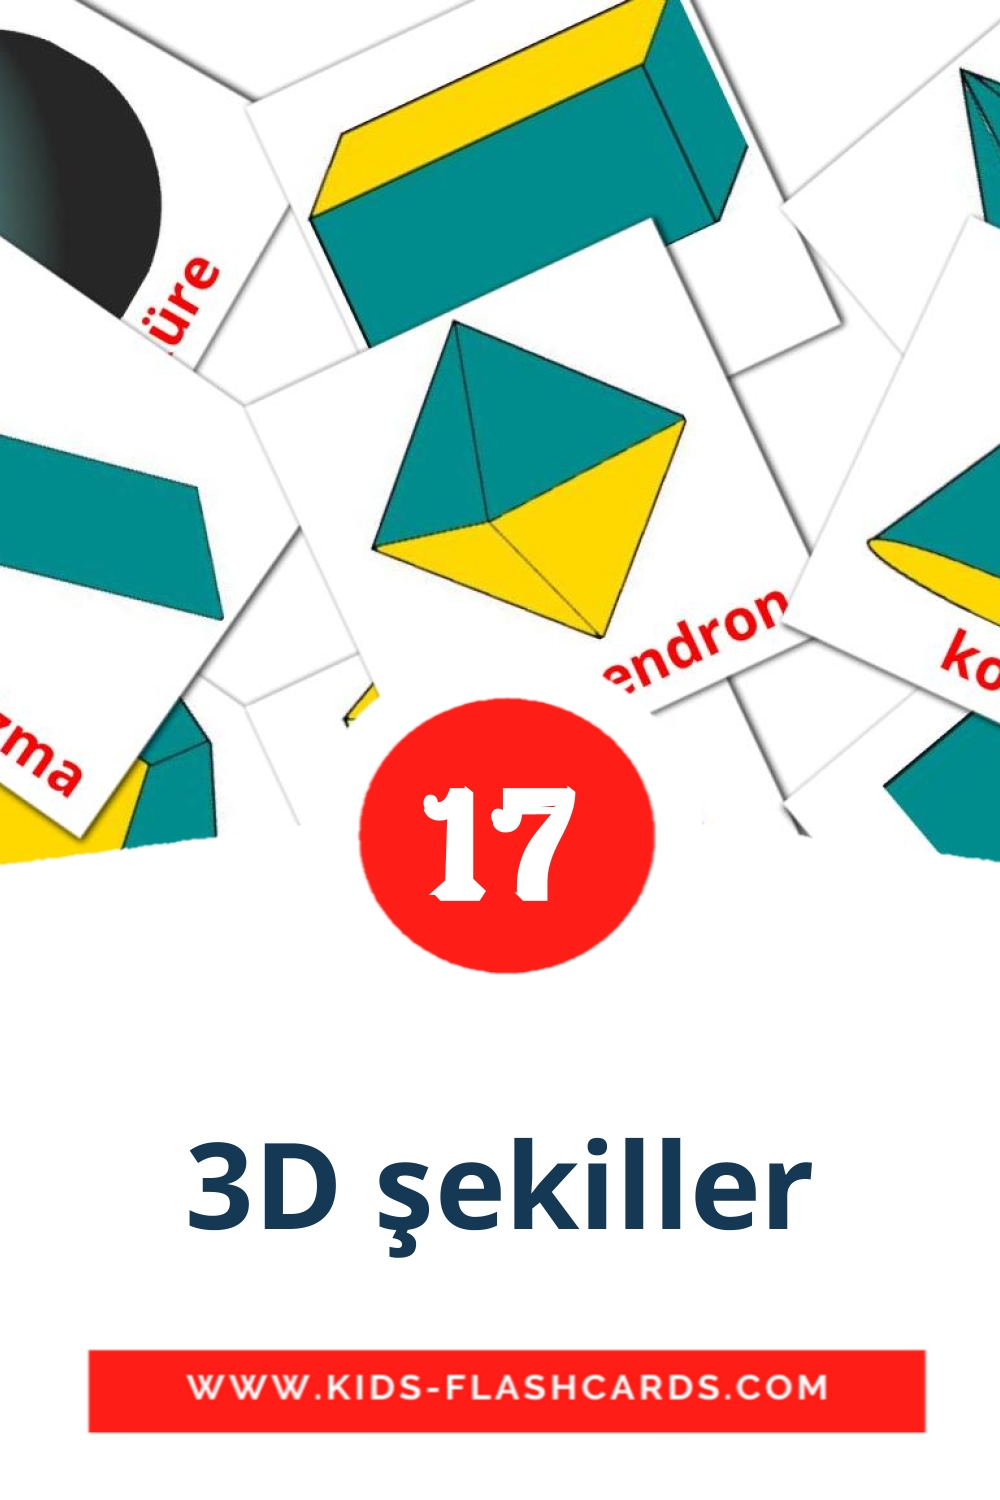 17 cartes illustrées de 3D şekiller pour la maternelle en turc